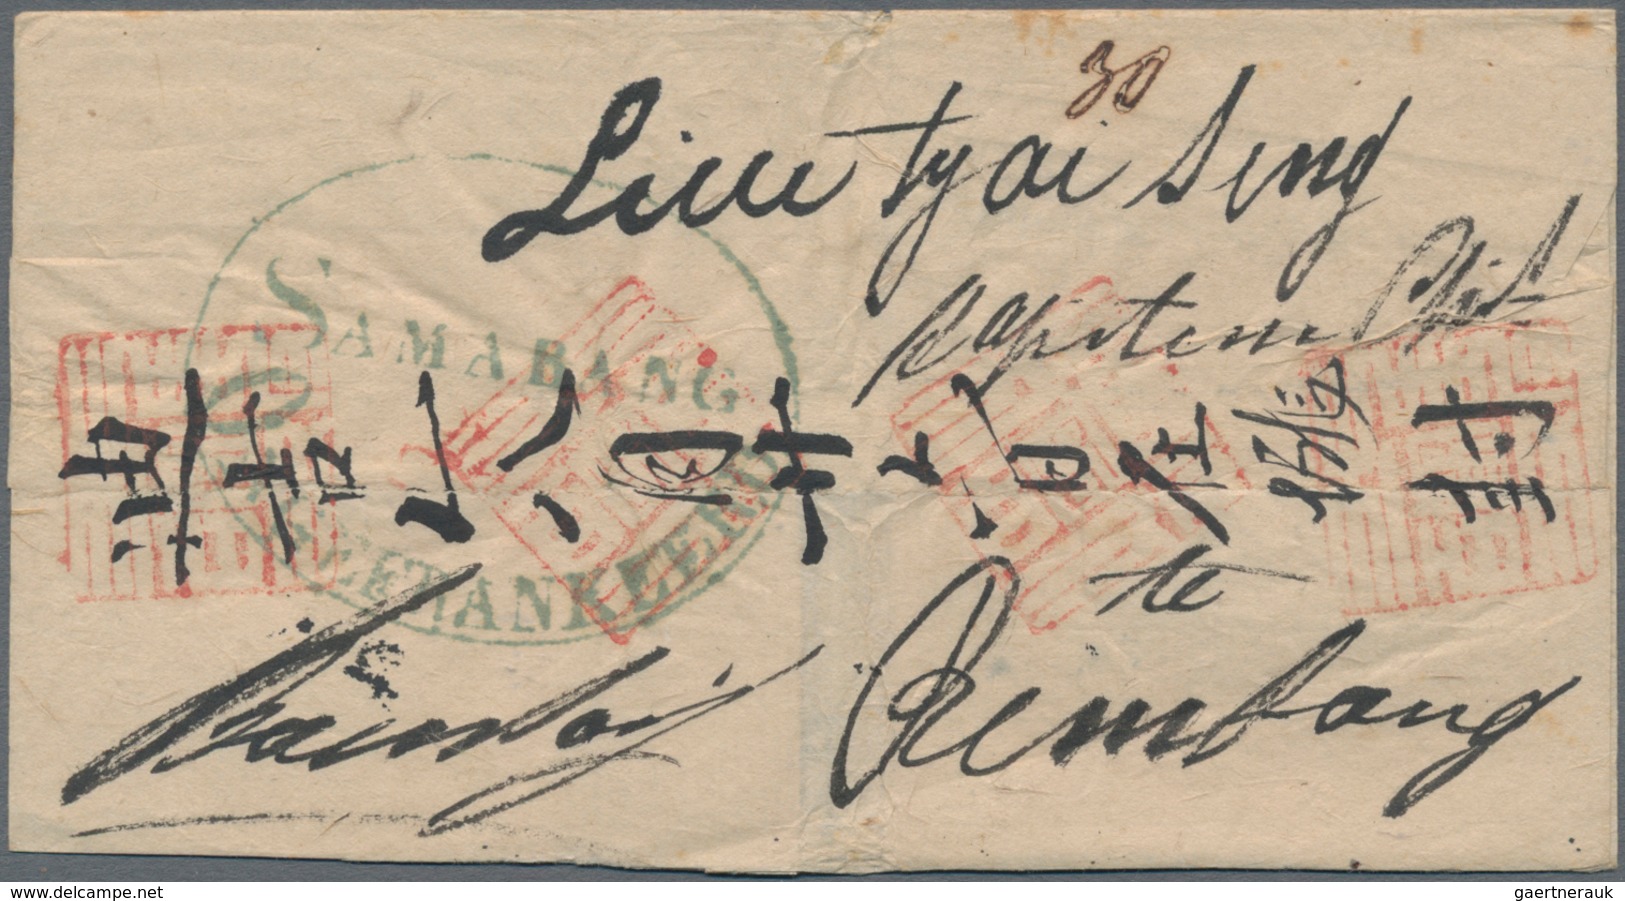 Niederländisch-Indien: 1855/1865 Ca., Lot Of 4 Folded Letter Sheets With Different Oval Postmarks, C - Nederlands-Indië